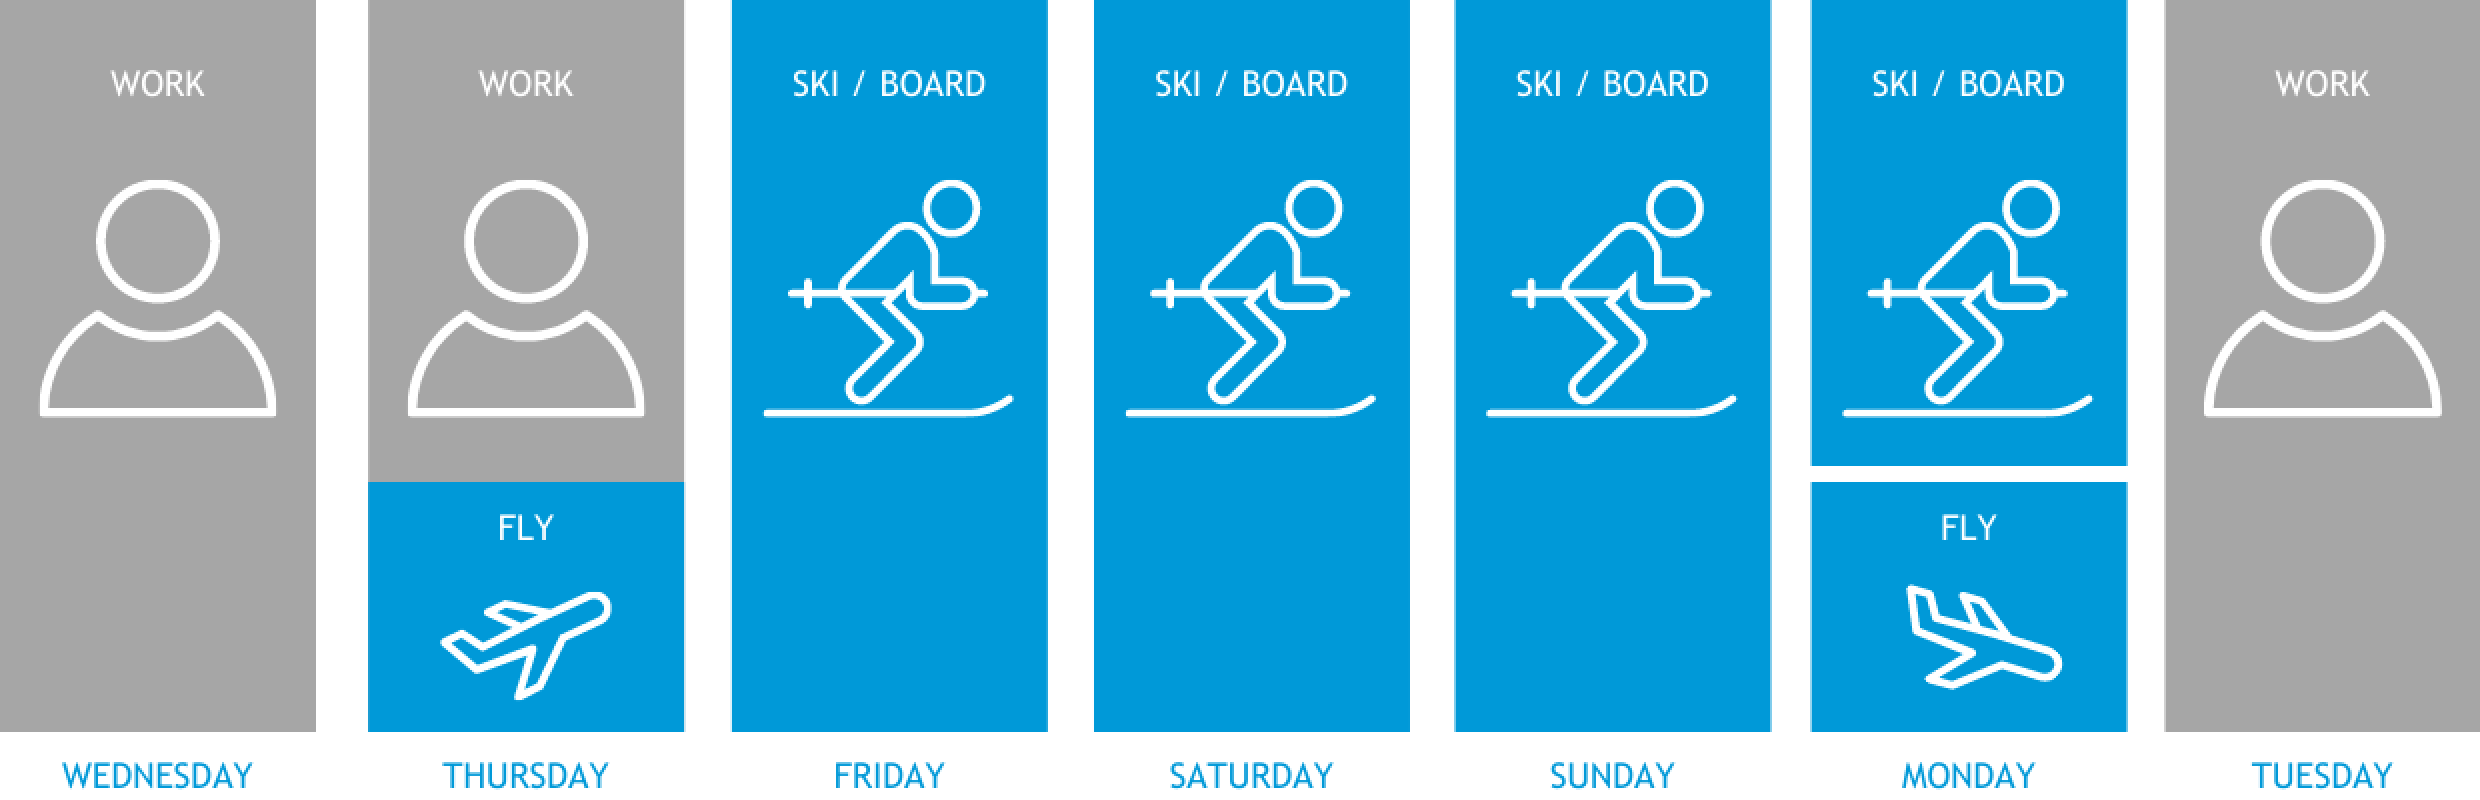 Long Ski Weekend Break - How It Works Graphic